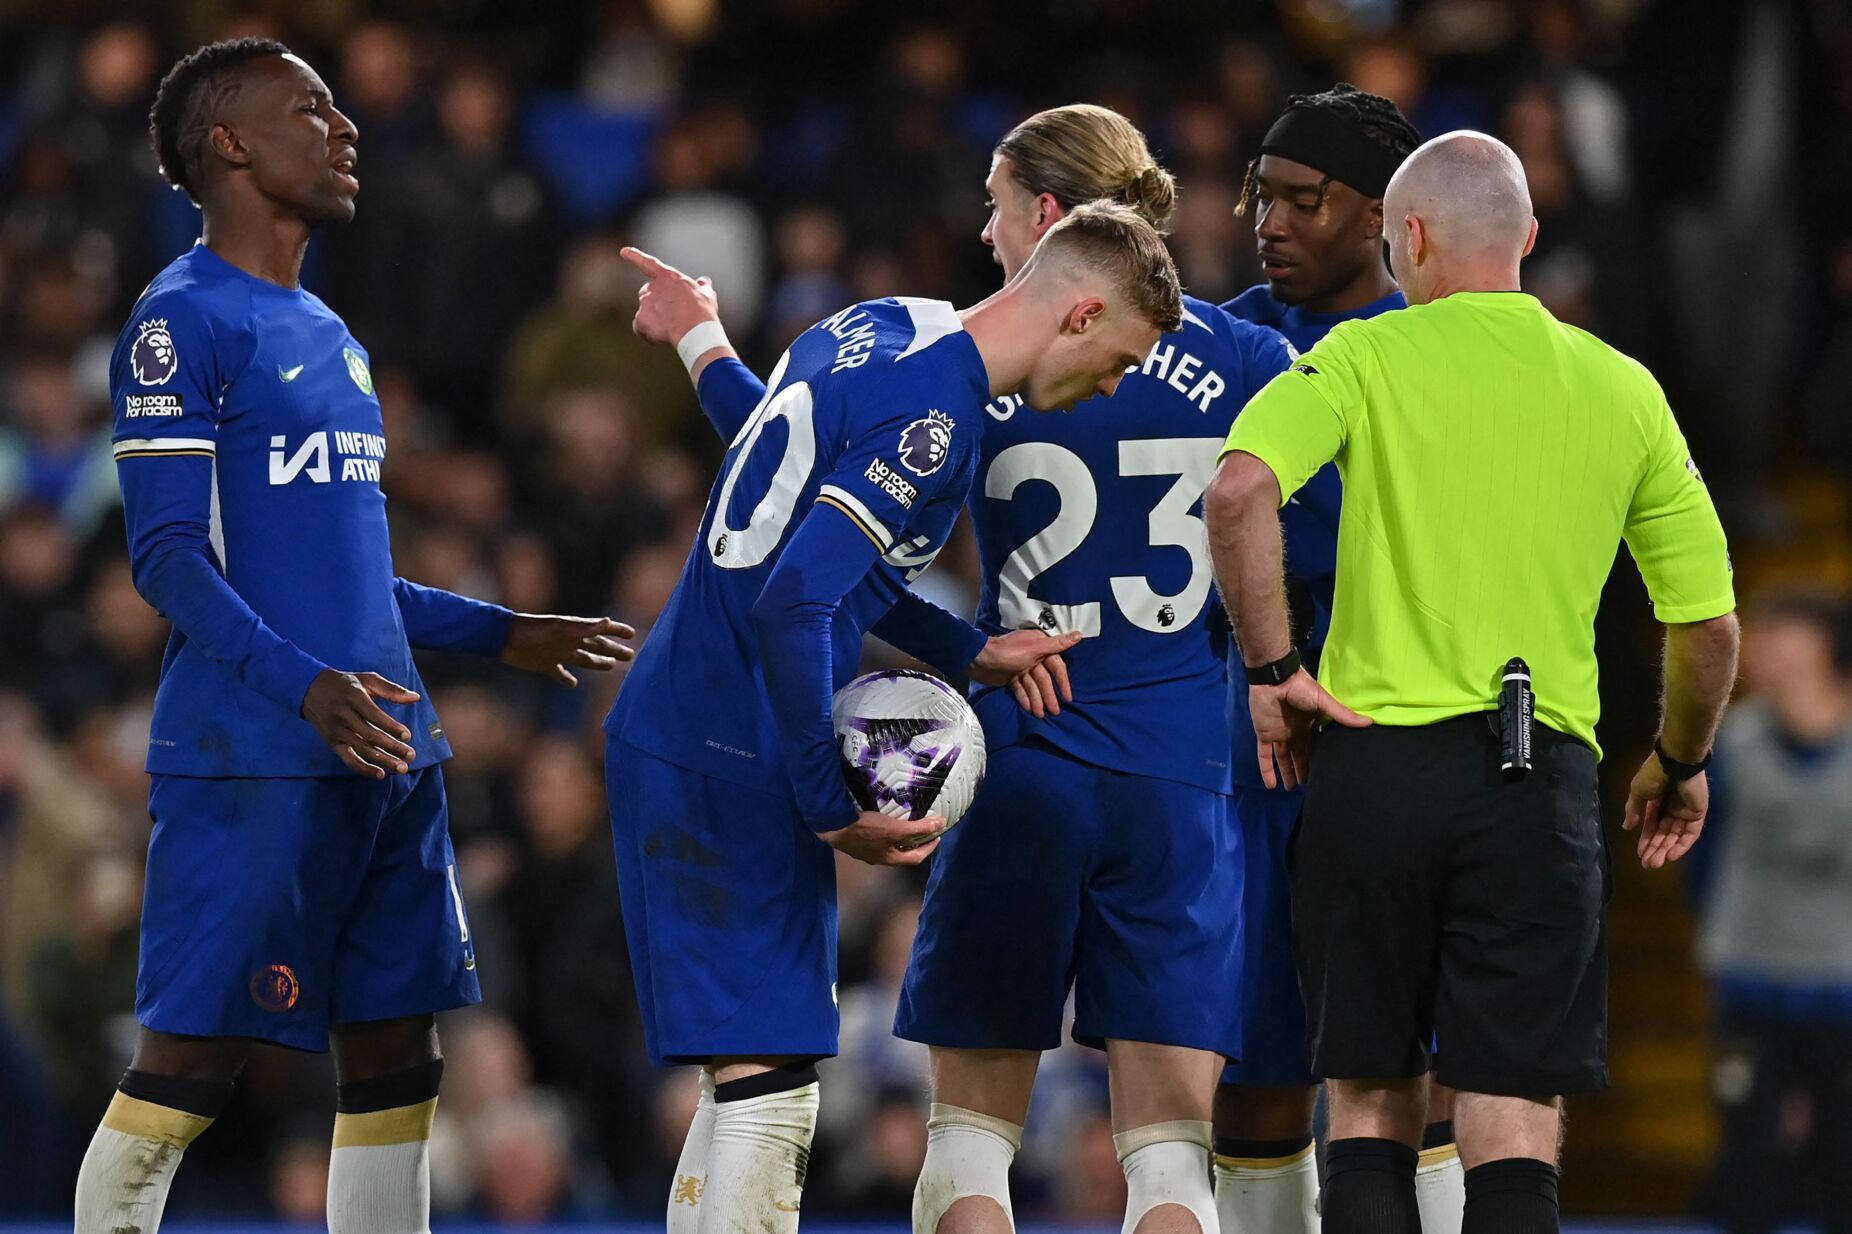 Jogadores do Chelsea discutem por um penálti e Pochettino reage: "Inaceitável. Uma vergonha"